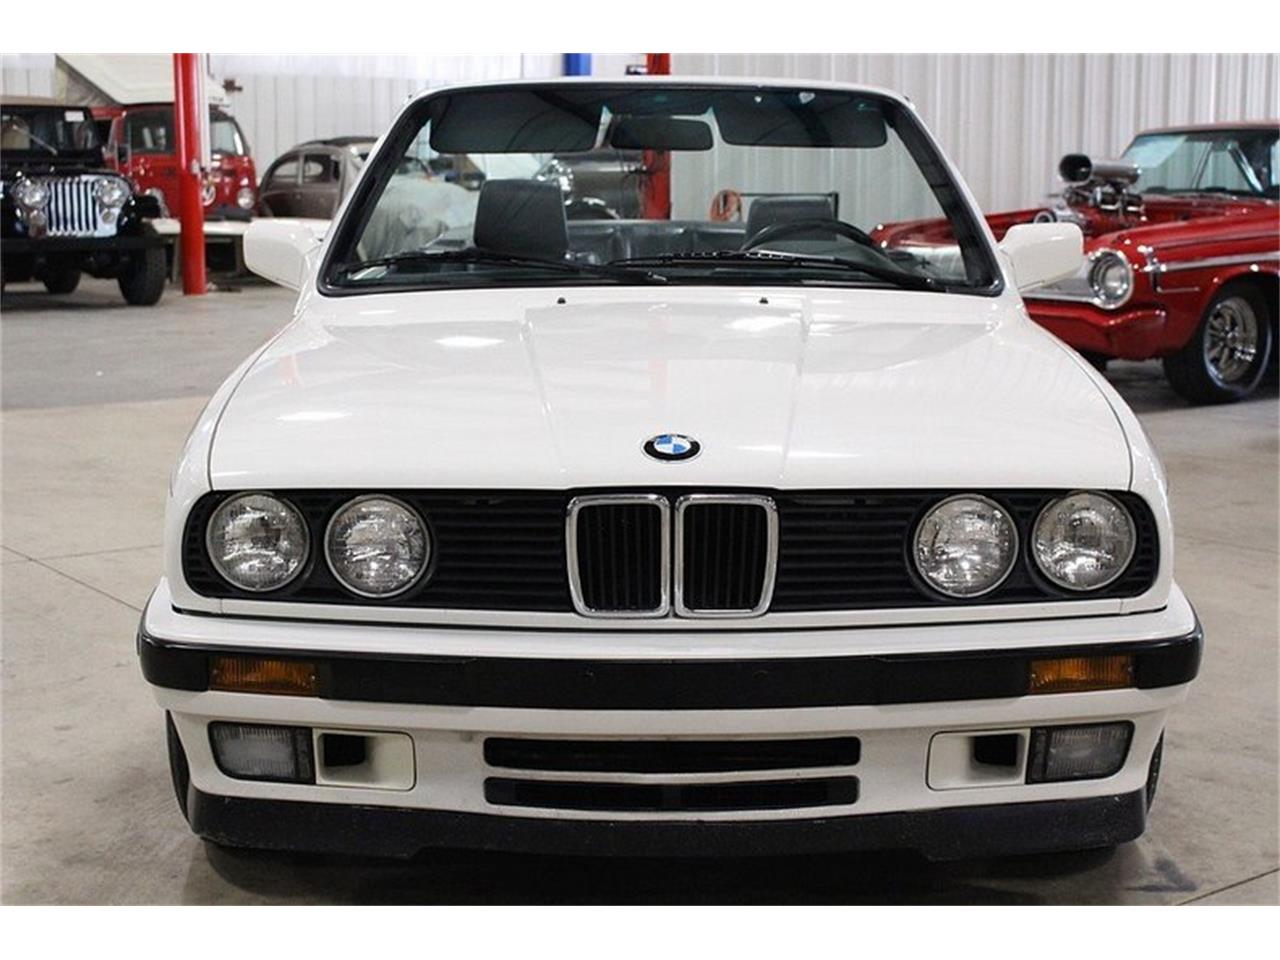 1992 BMW 325i for Sale | ClassicCars.com | CC-1007129